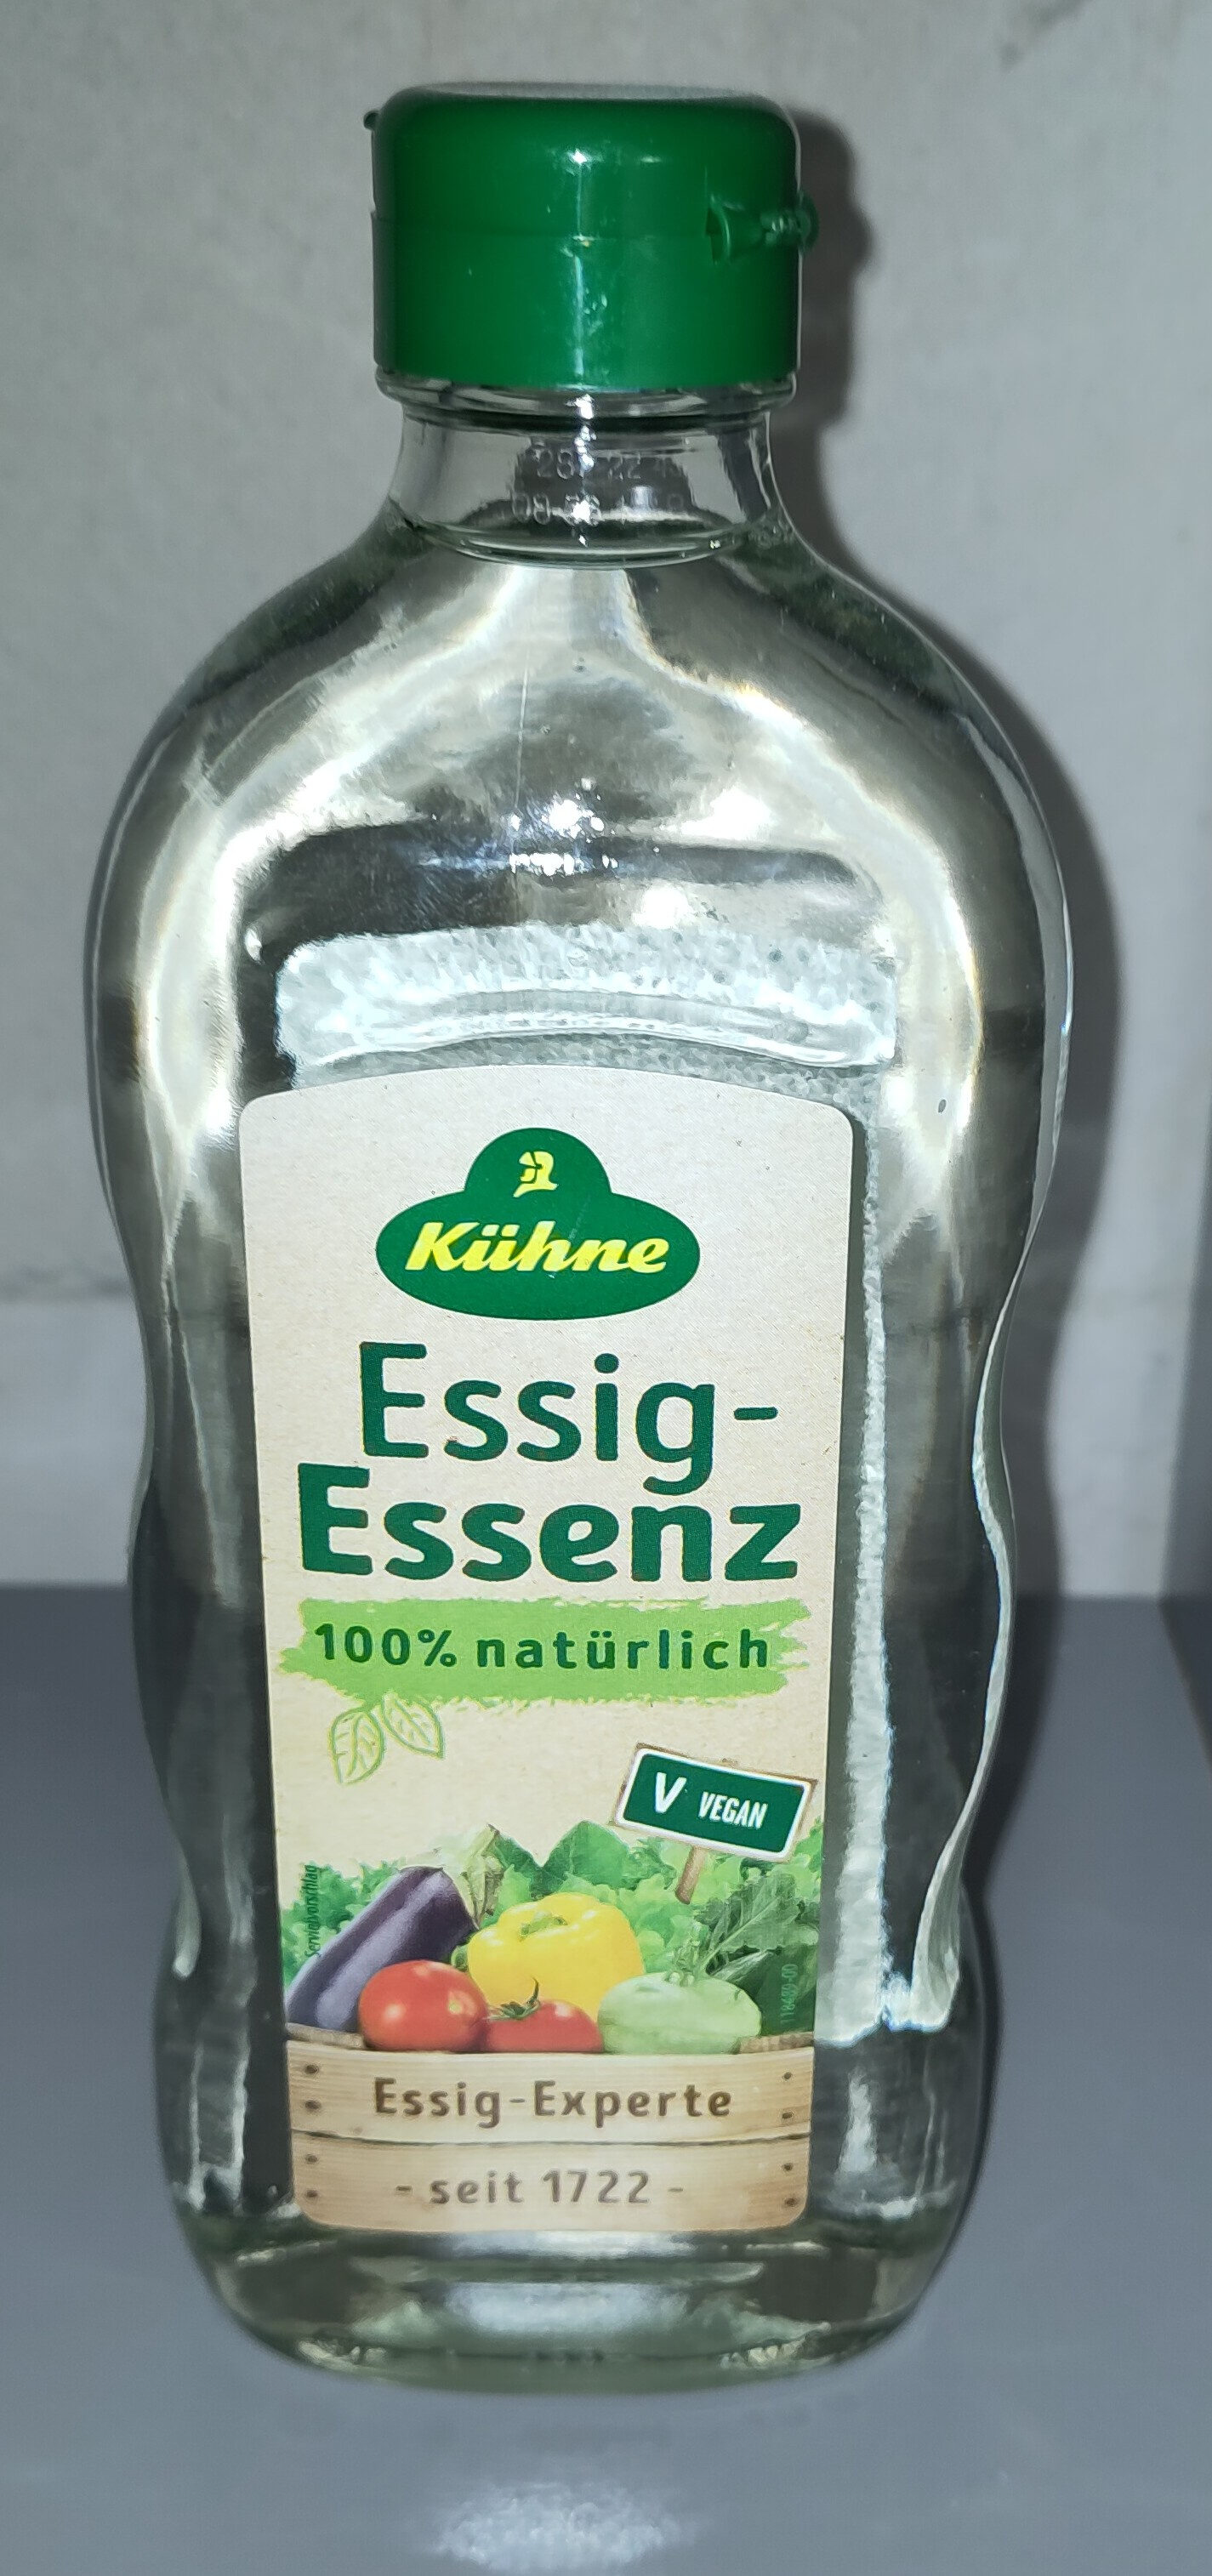 Essig Essenz - Product - de